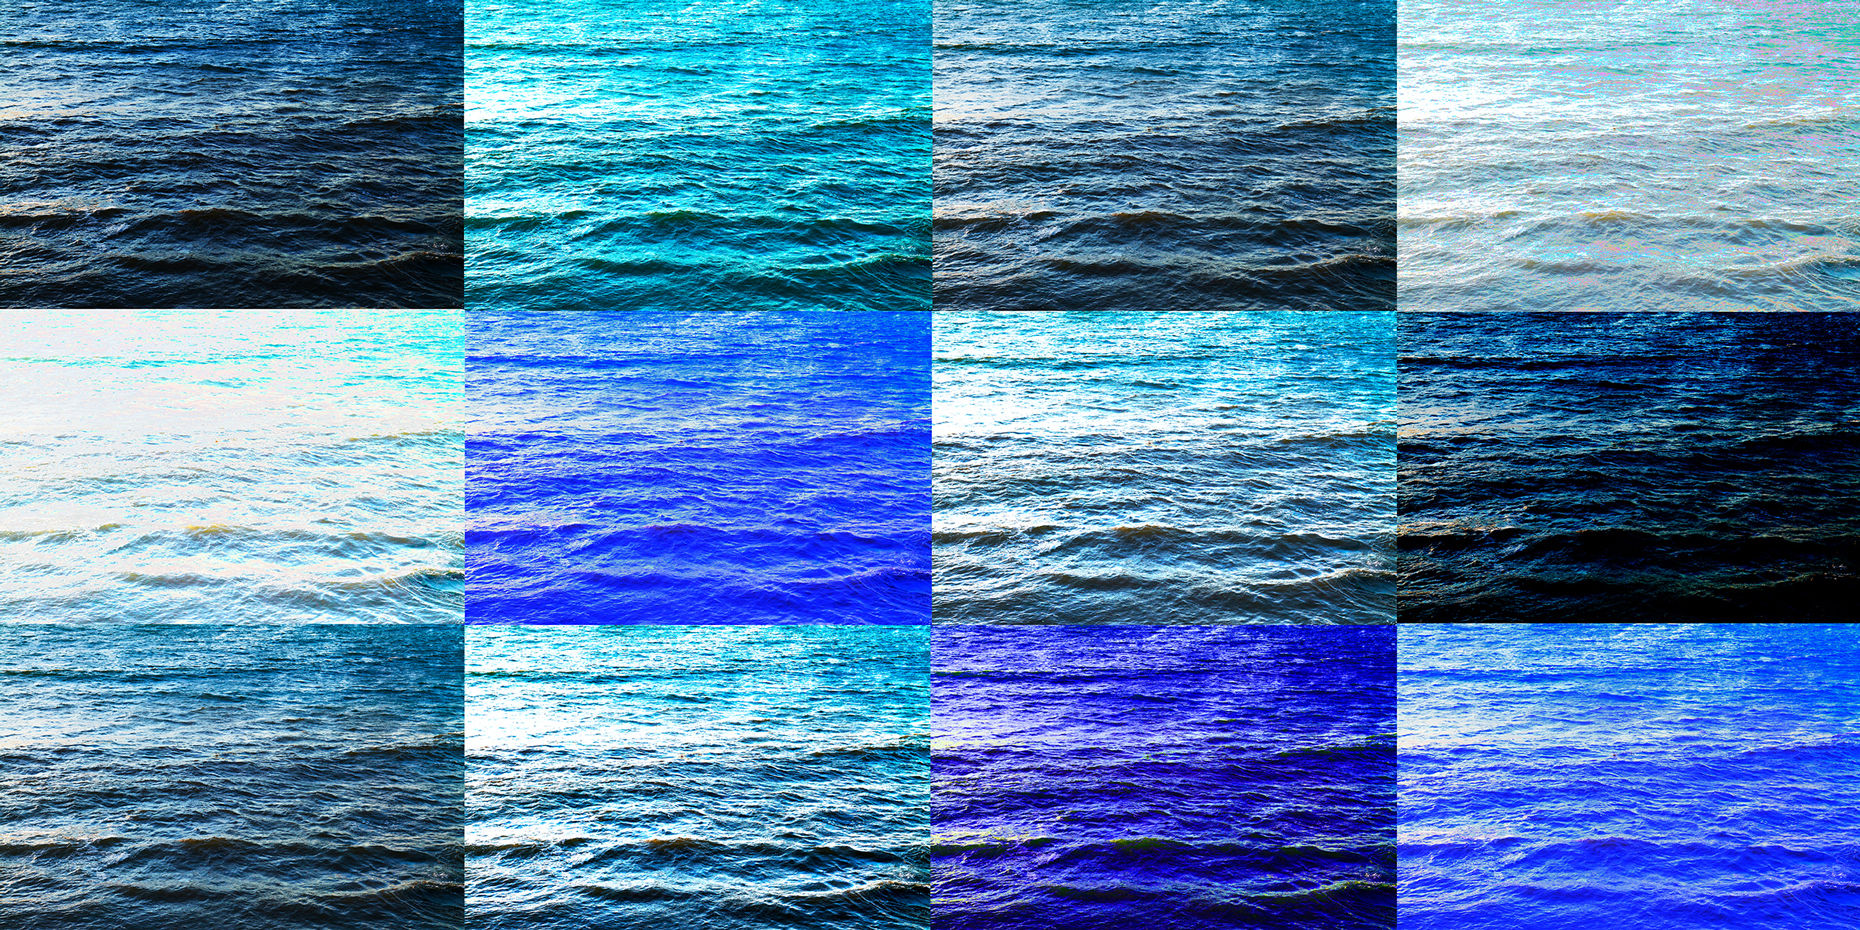 Composition Blue Wave